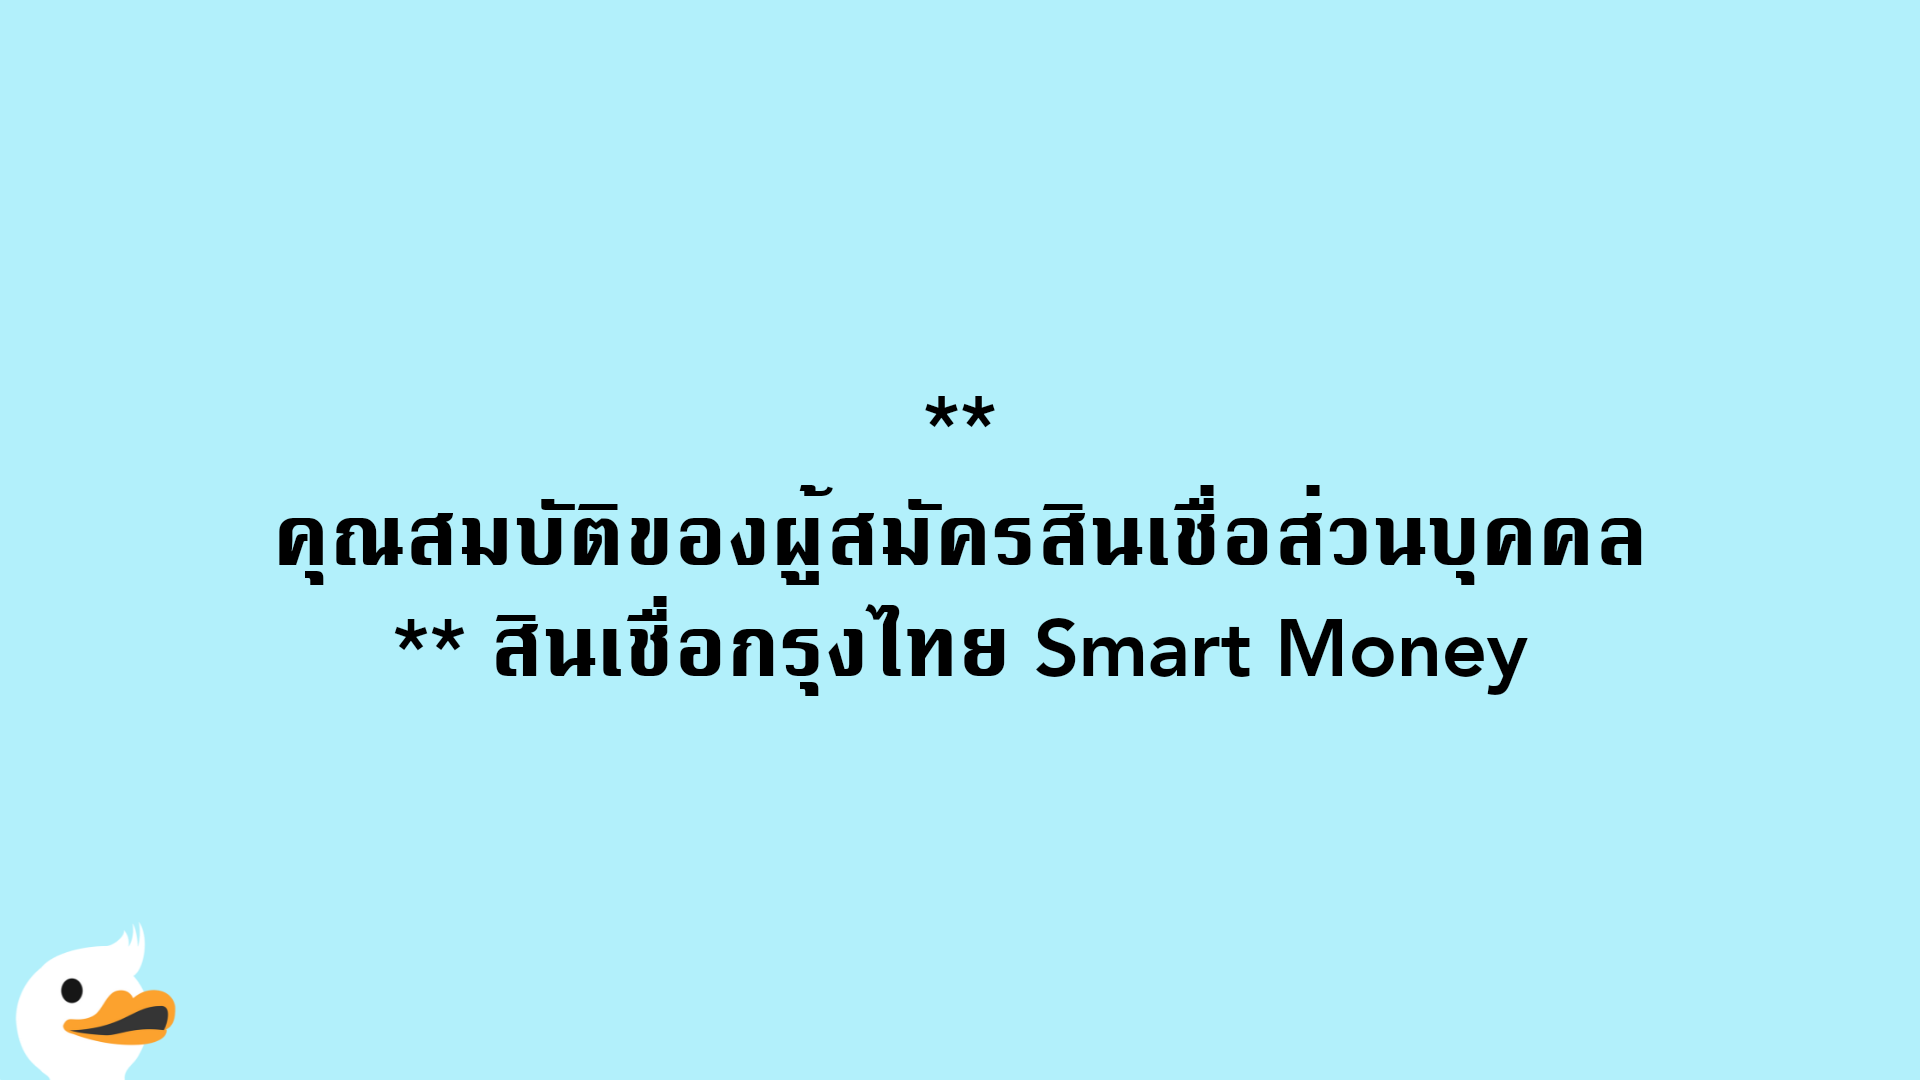 คุณสมบัติของผู้สมัครสินเชื่อส่วนบุคคล สินเชื่อกรุงไทย Smart Money